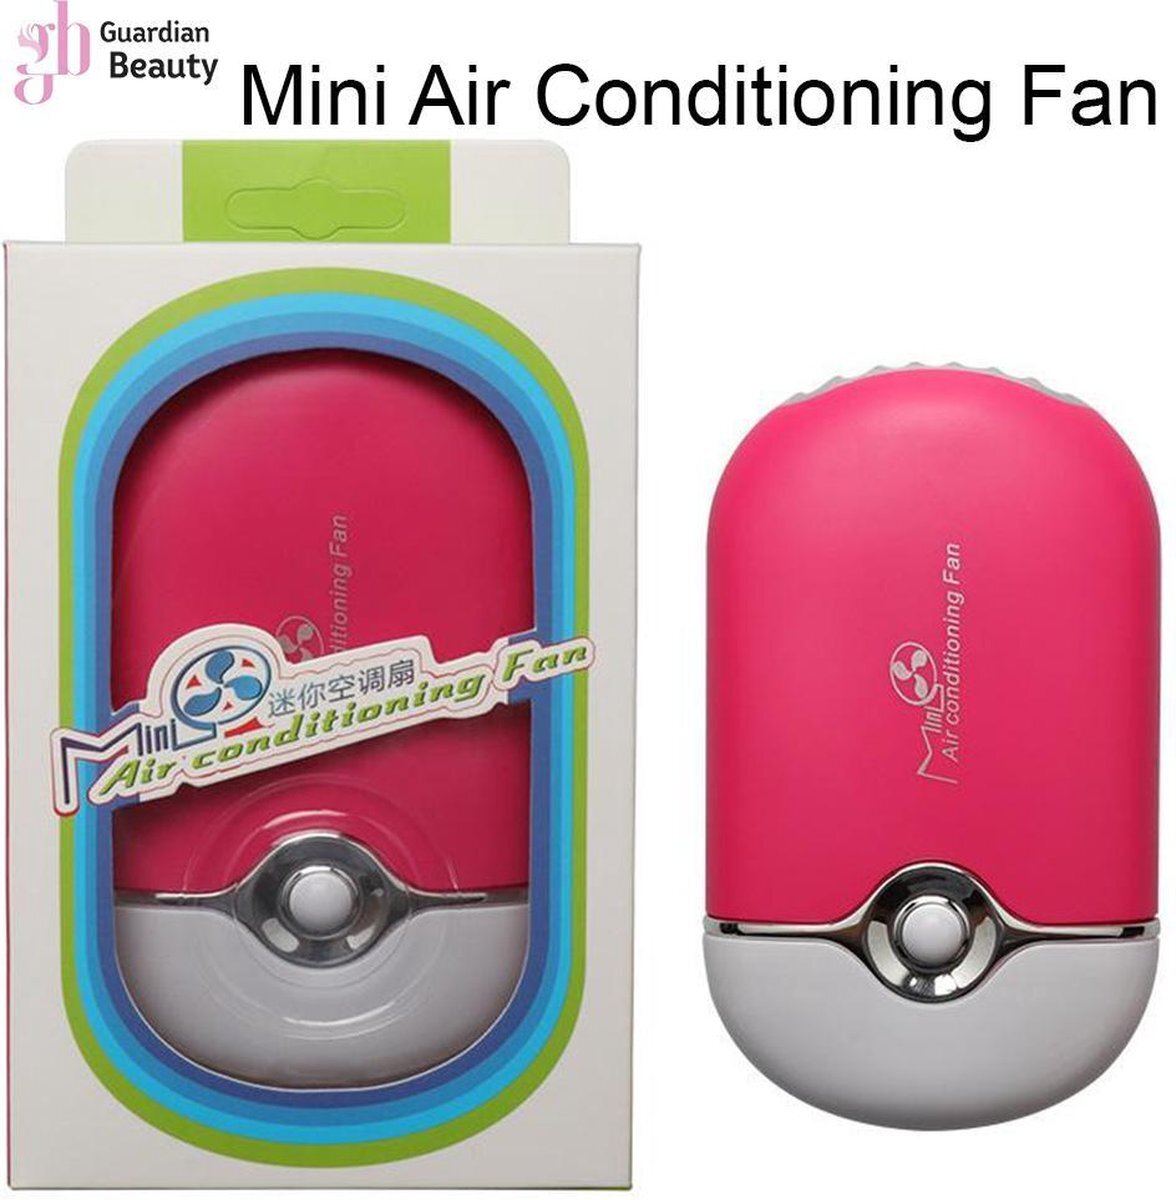 Guardian Beauty ventilator voor wimpers startpakket | Wimpers Extension Fan | Mini Air Conditioning Fan